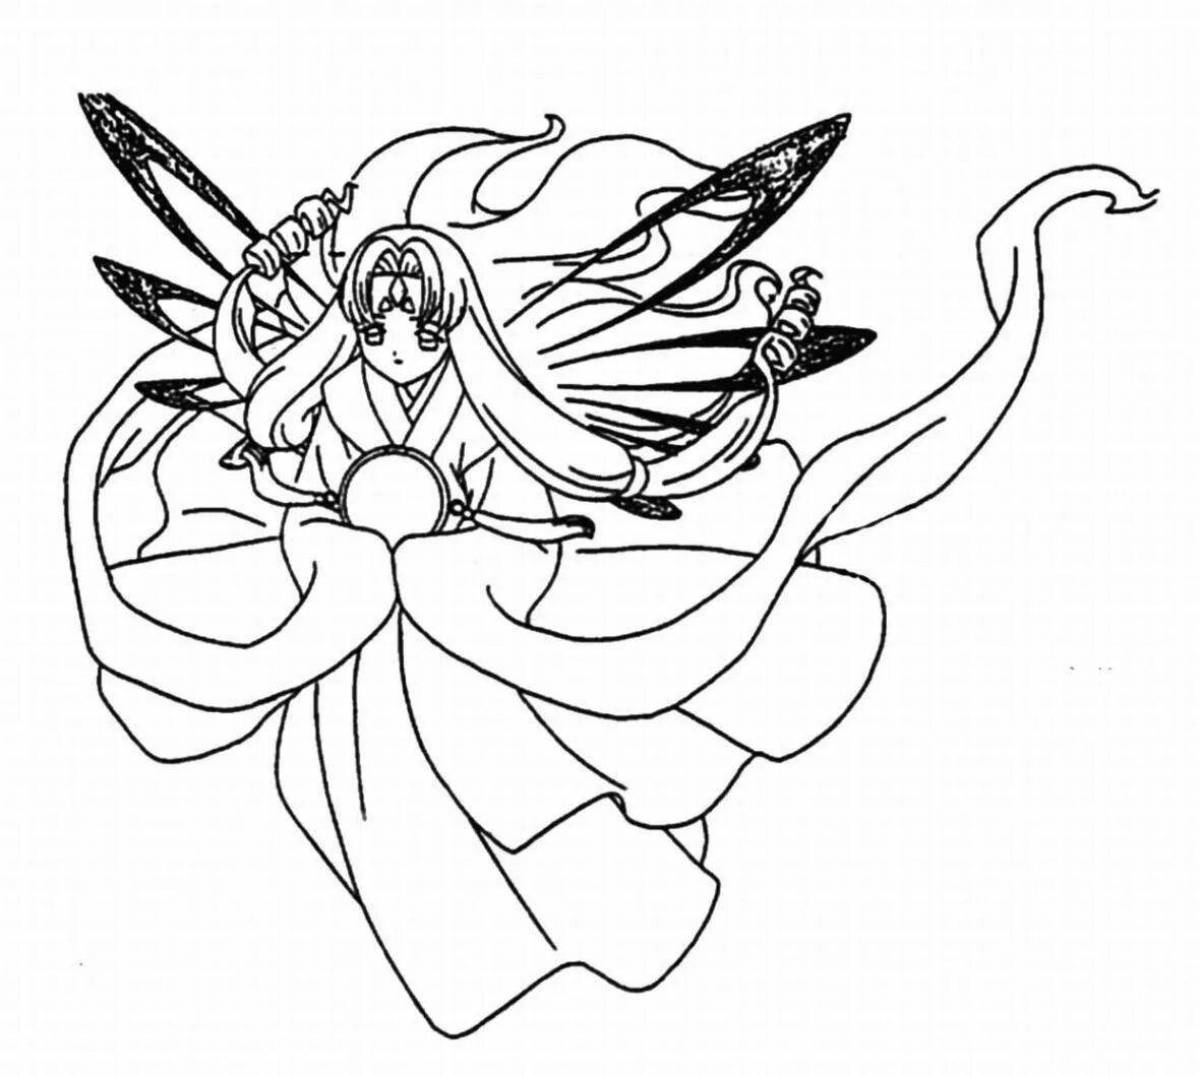 Радиант раскраска аниме с крыльями